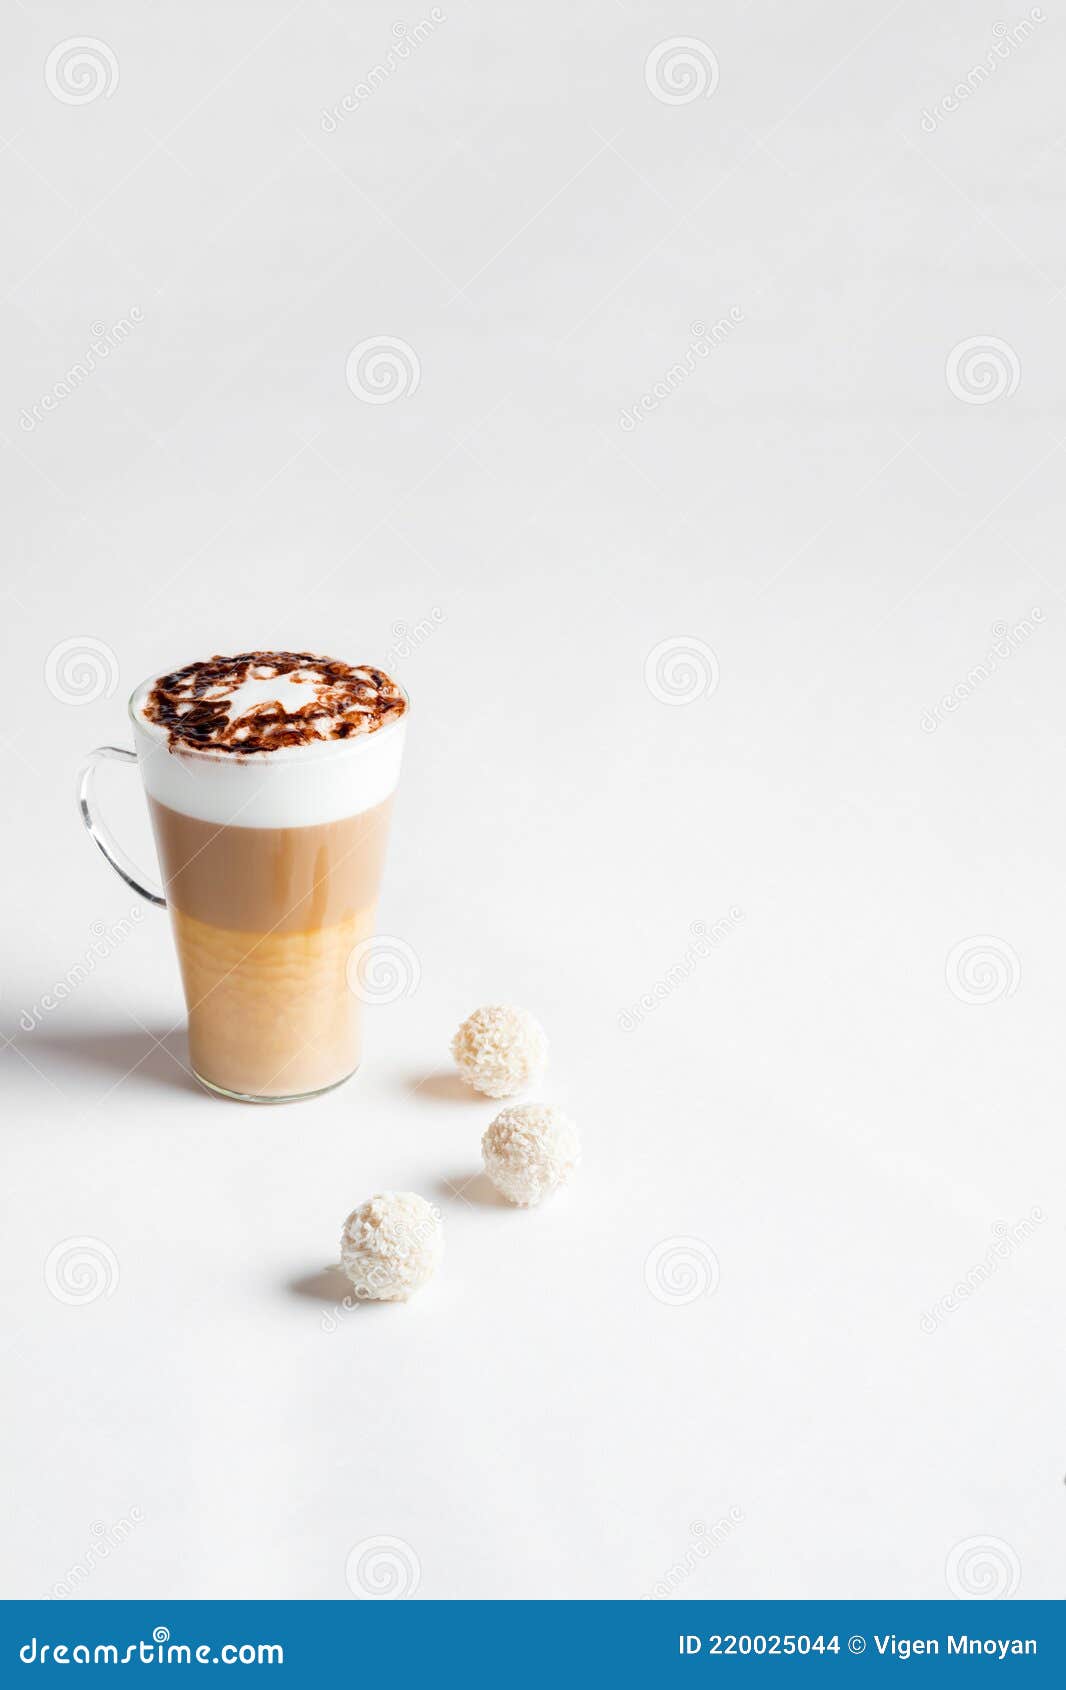 cafe latte macchiato layered coffee